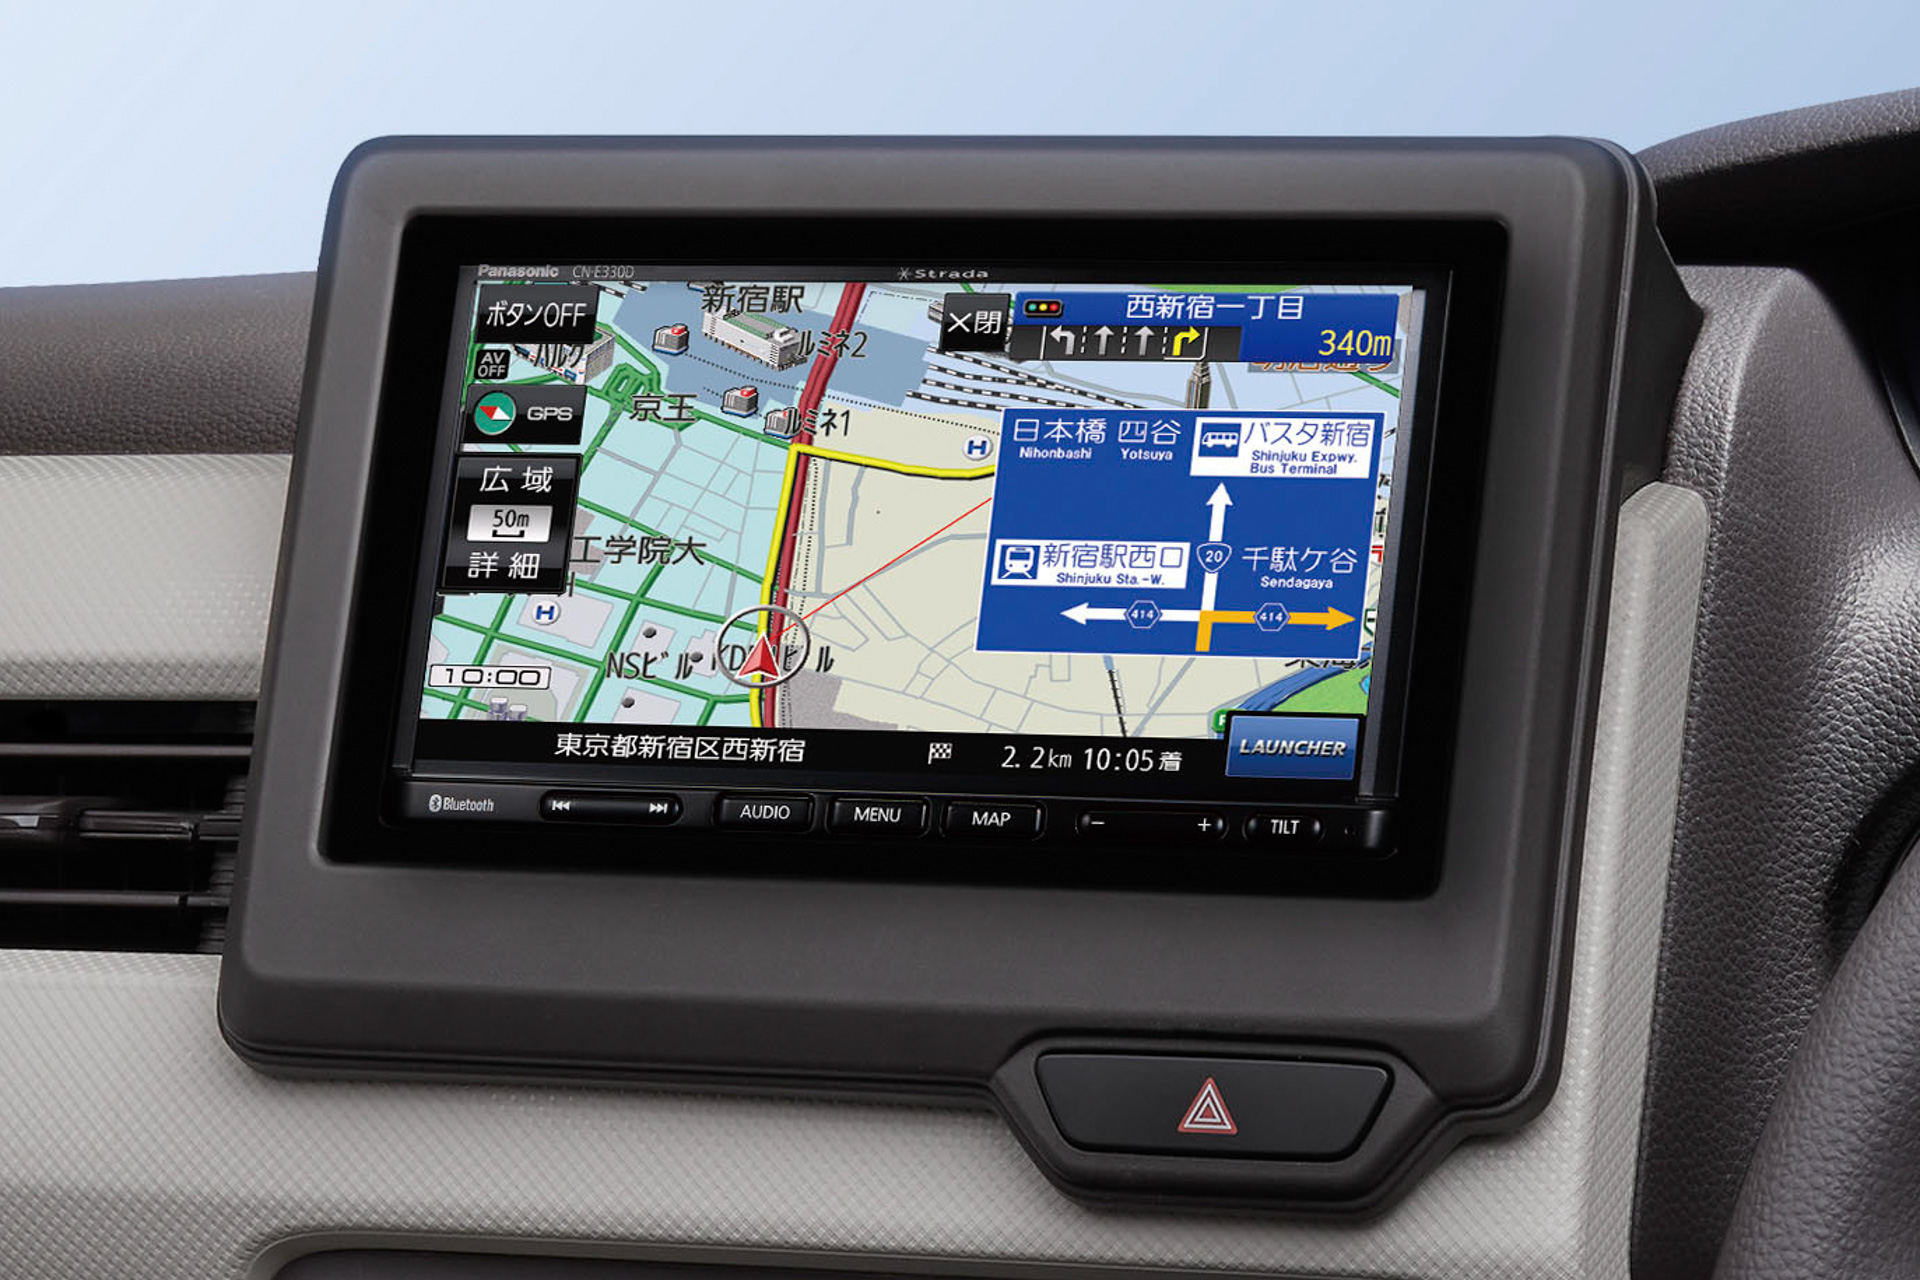 パナソニック、7V型ワイドVGA搭載の「ストラーダ」ベーシックモデル「CN-E330D」 みちびき対応で自車位置測位精度向上 - Car Watch